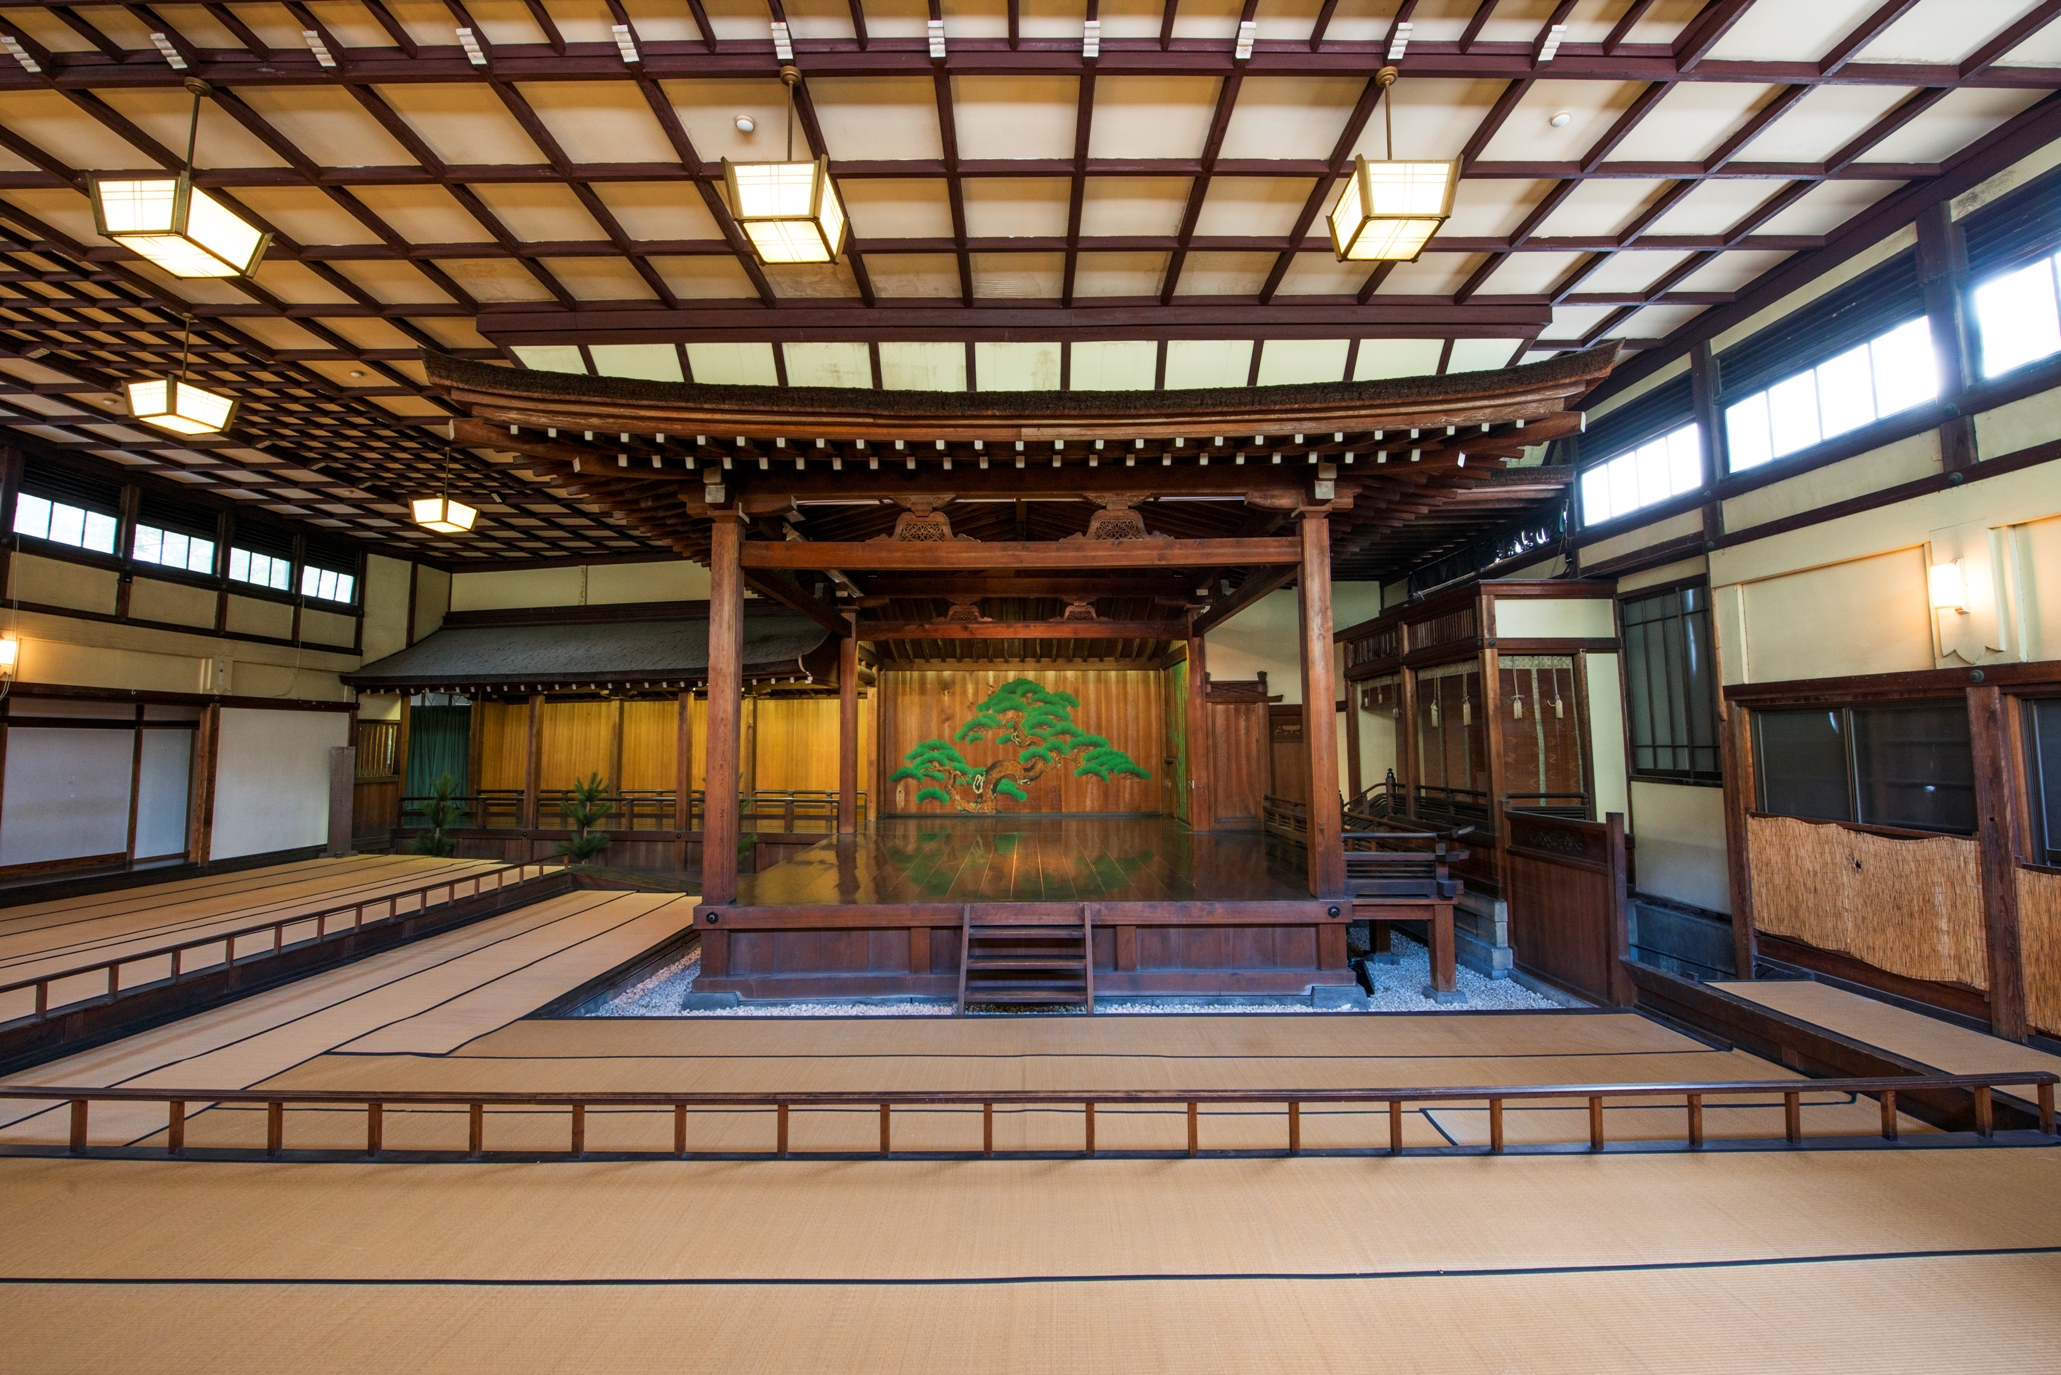 Noh Theater of Sumiyoshi Shrine